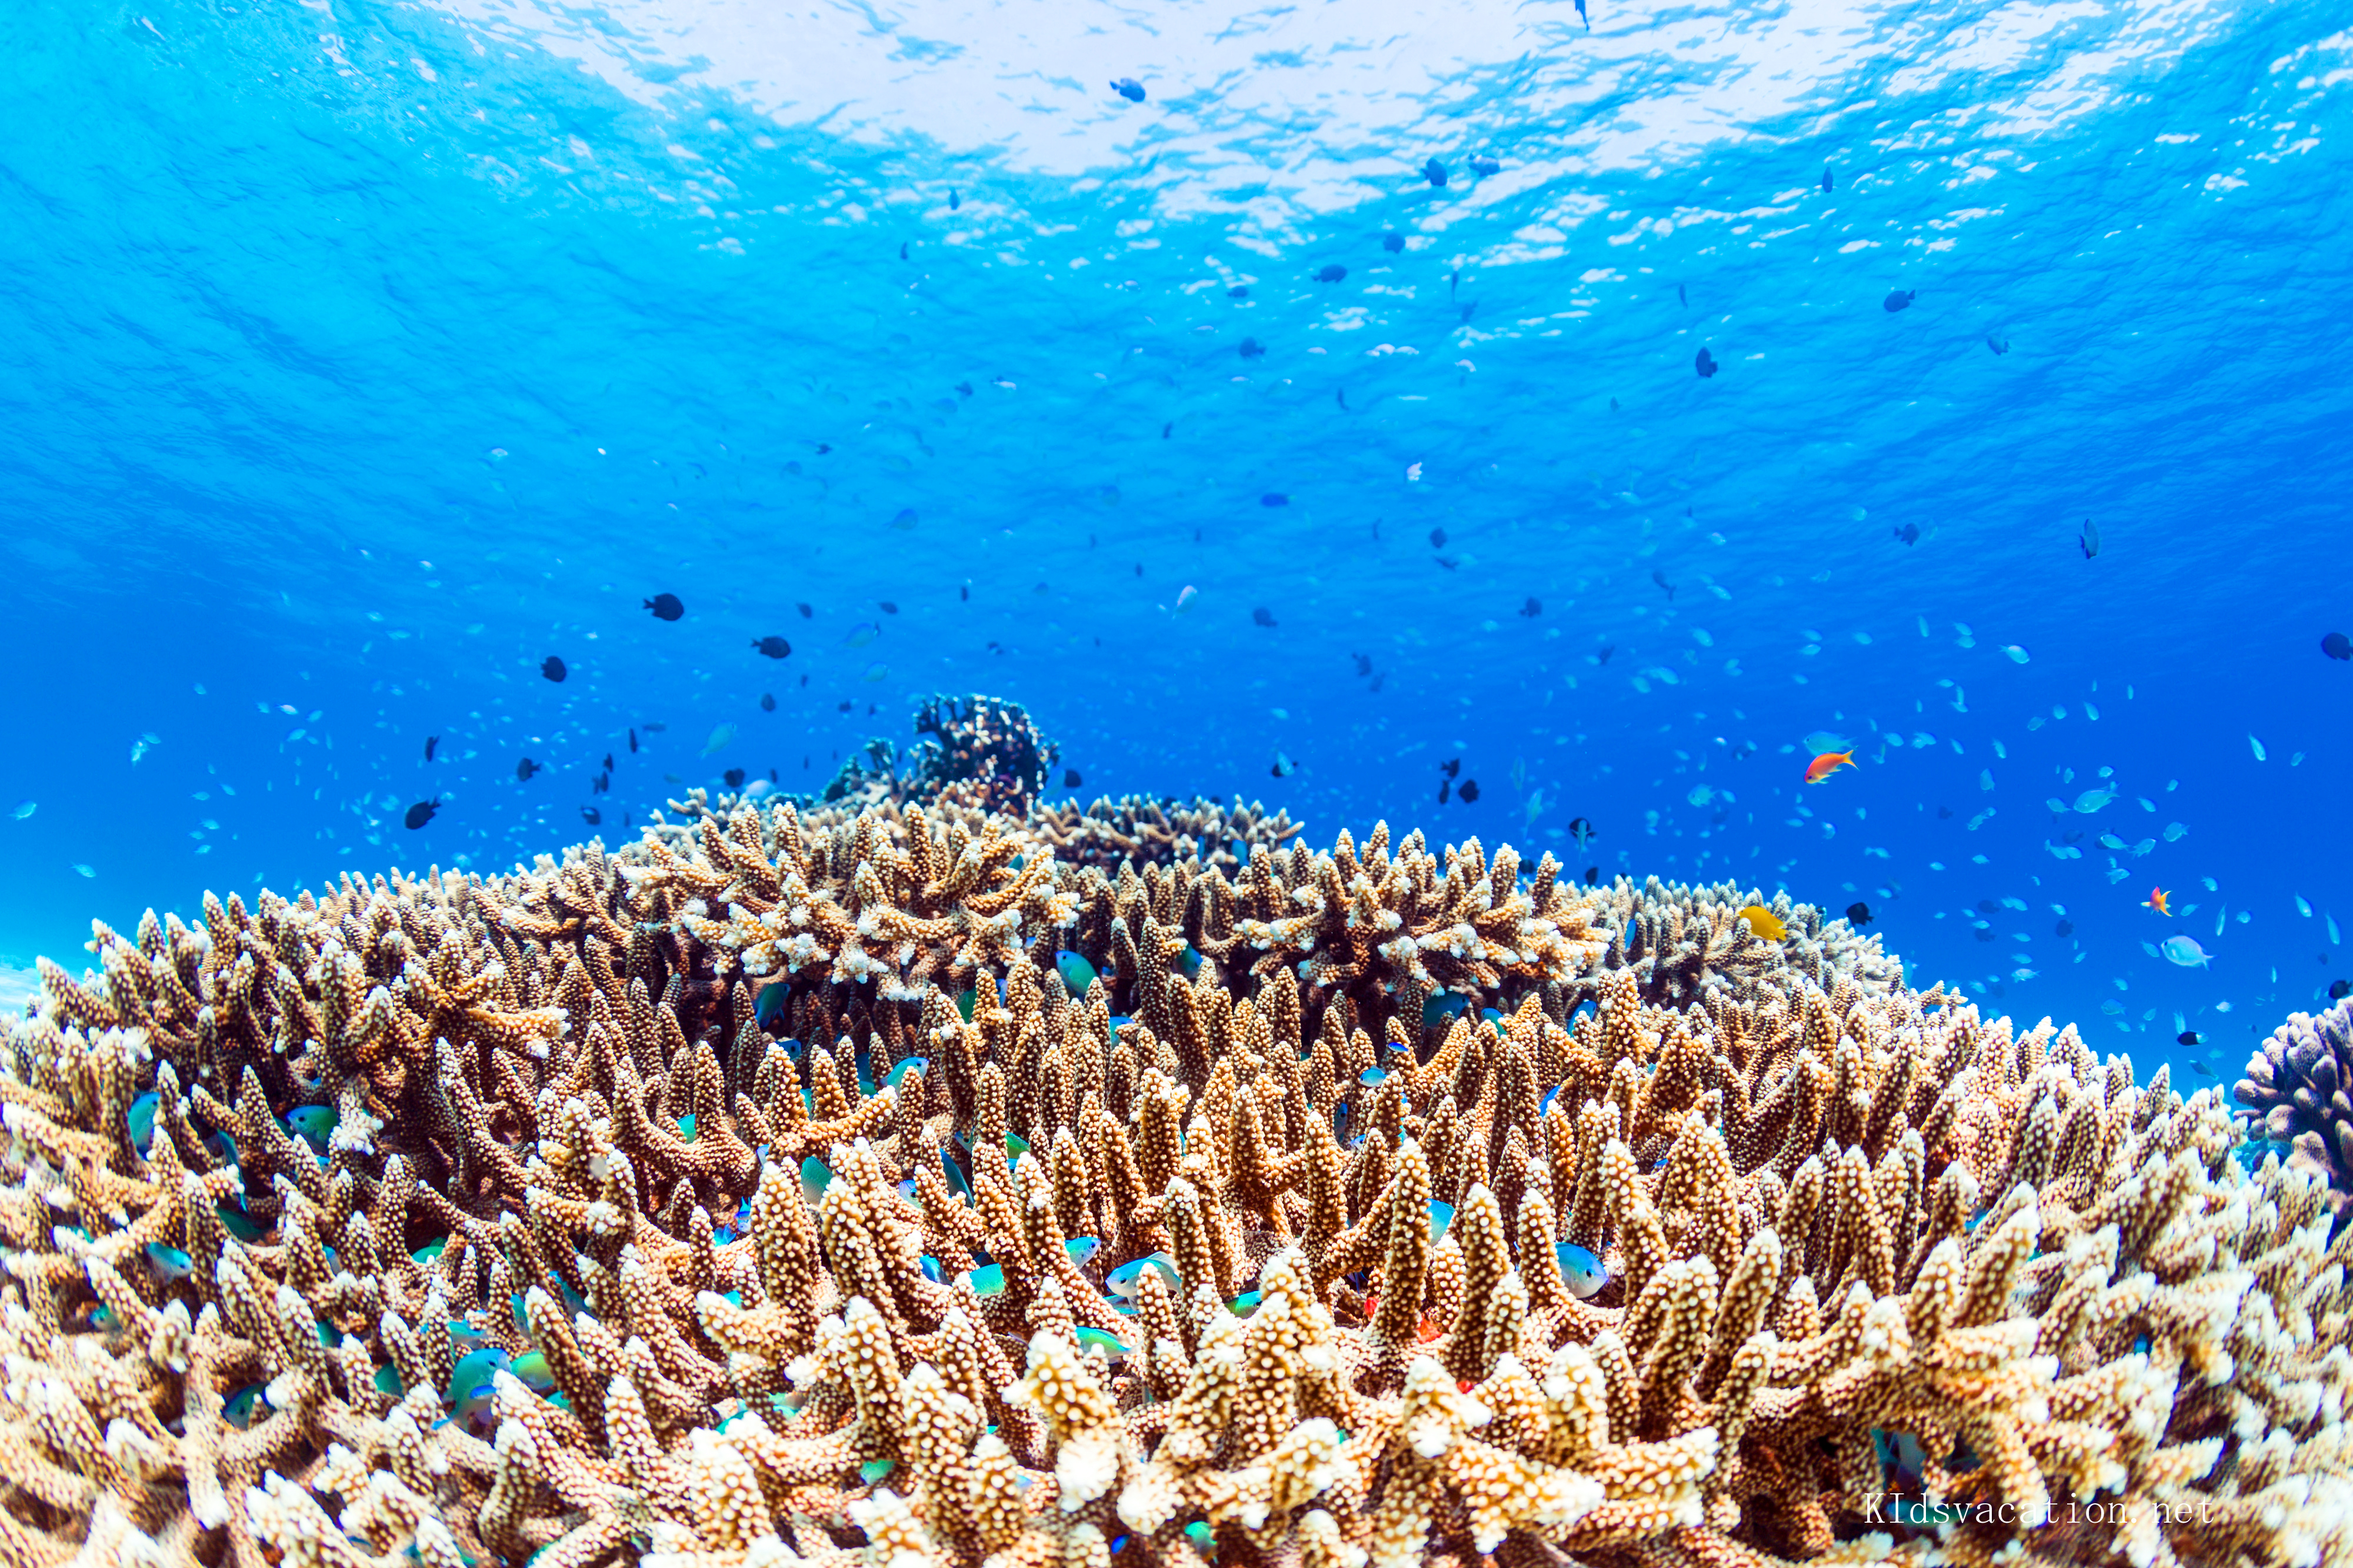 サンゴ礁とトロピカルフィッシュ